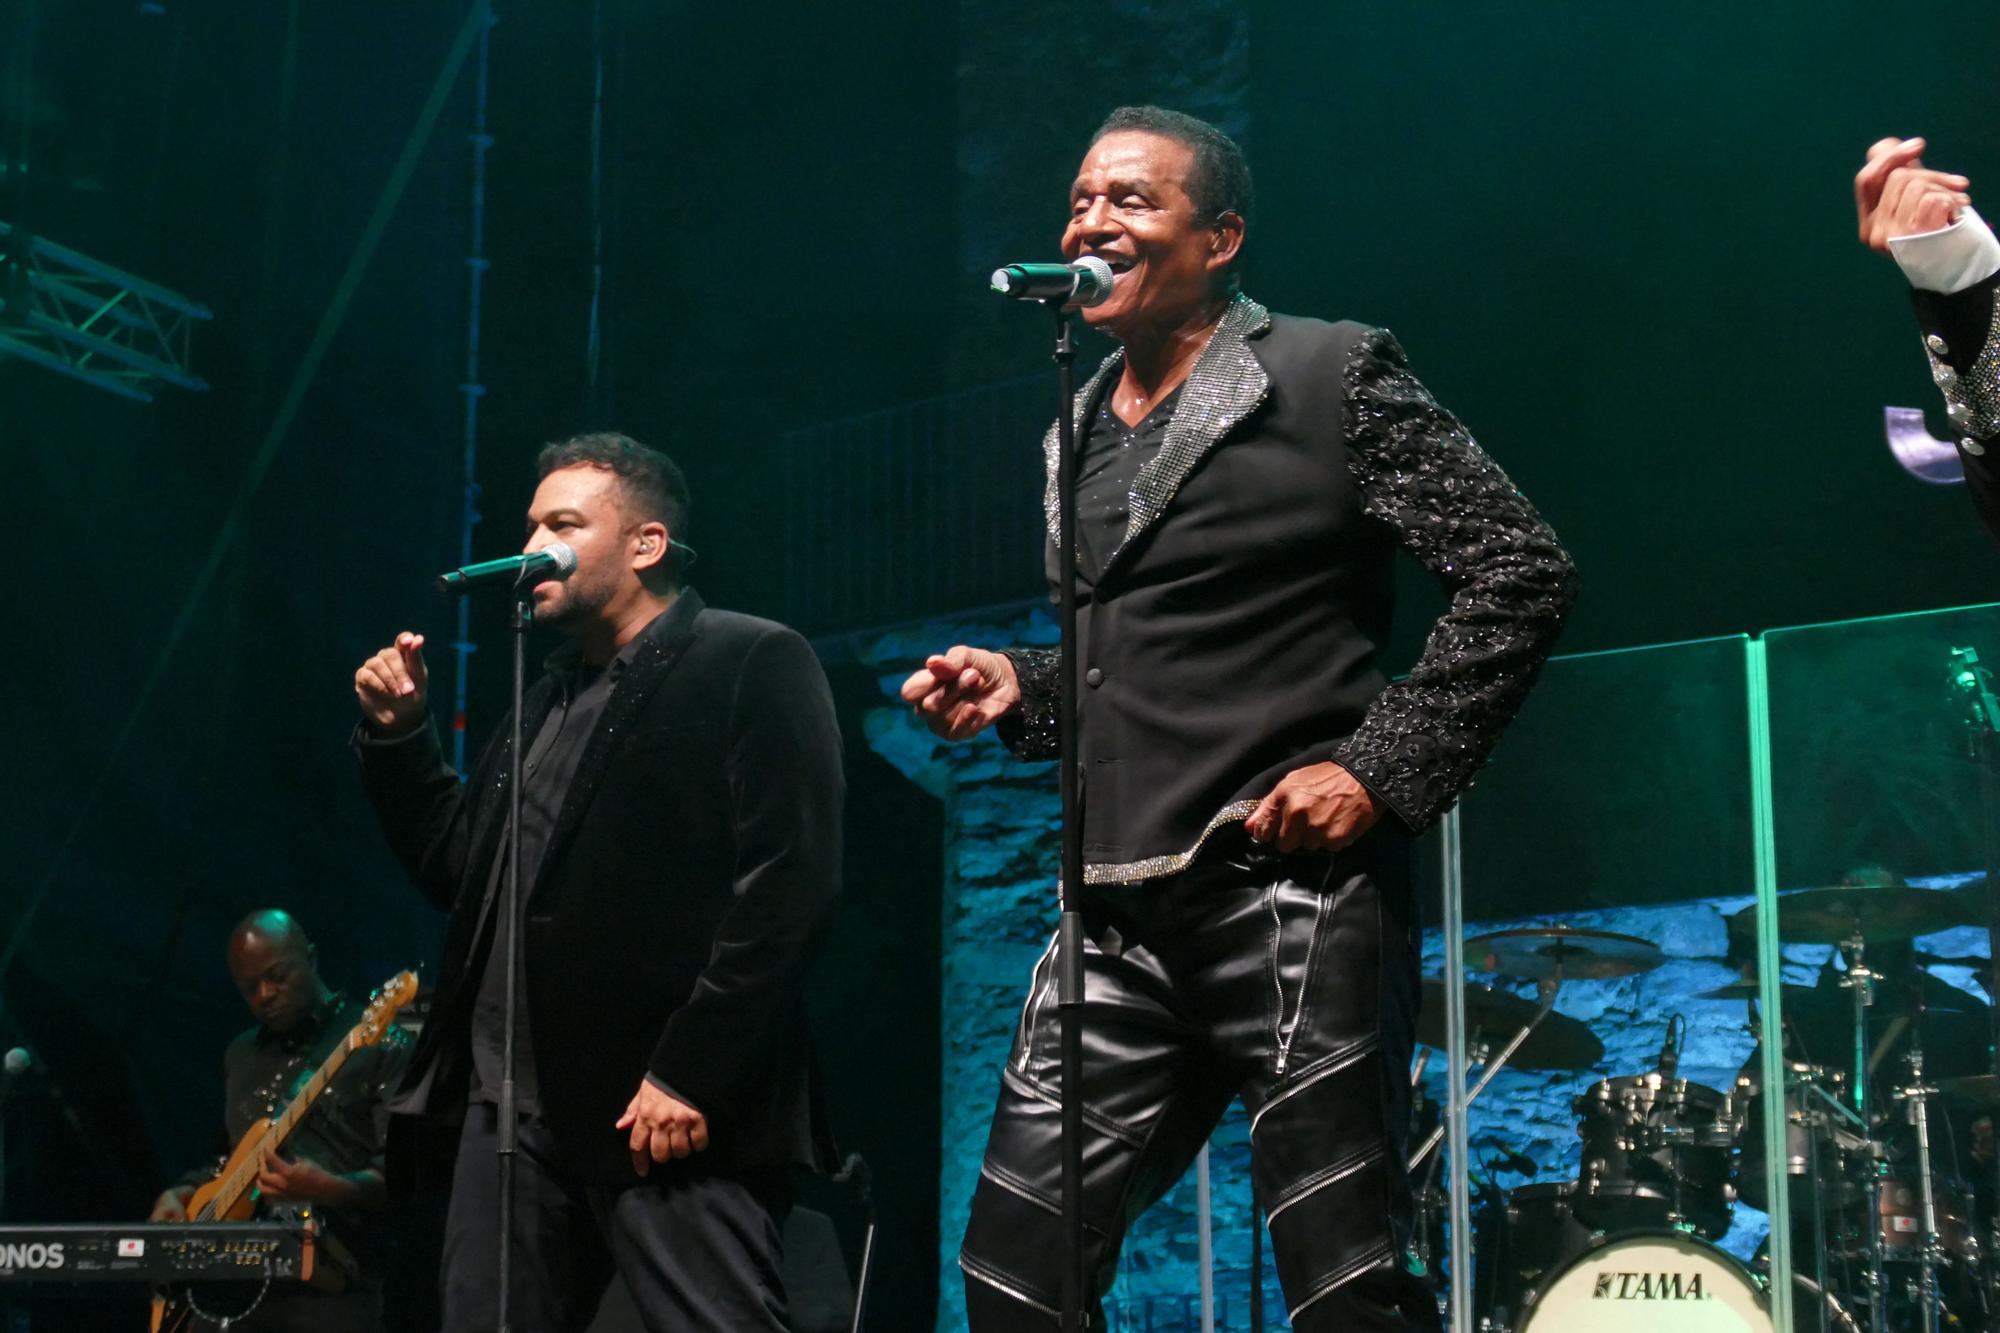 The Jacksons ofereix el seu únic concert a Catalunya al festival Sons del Món